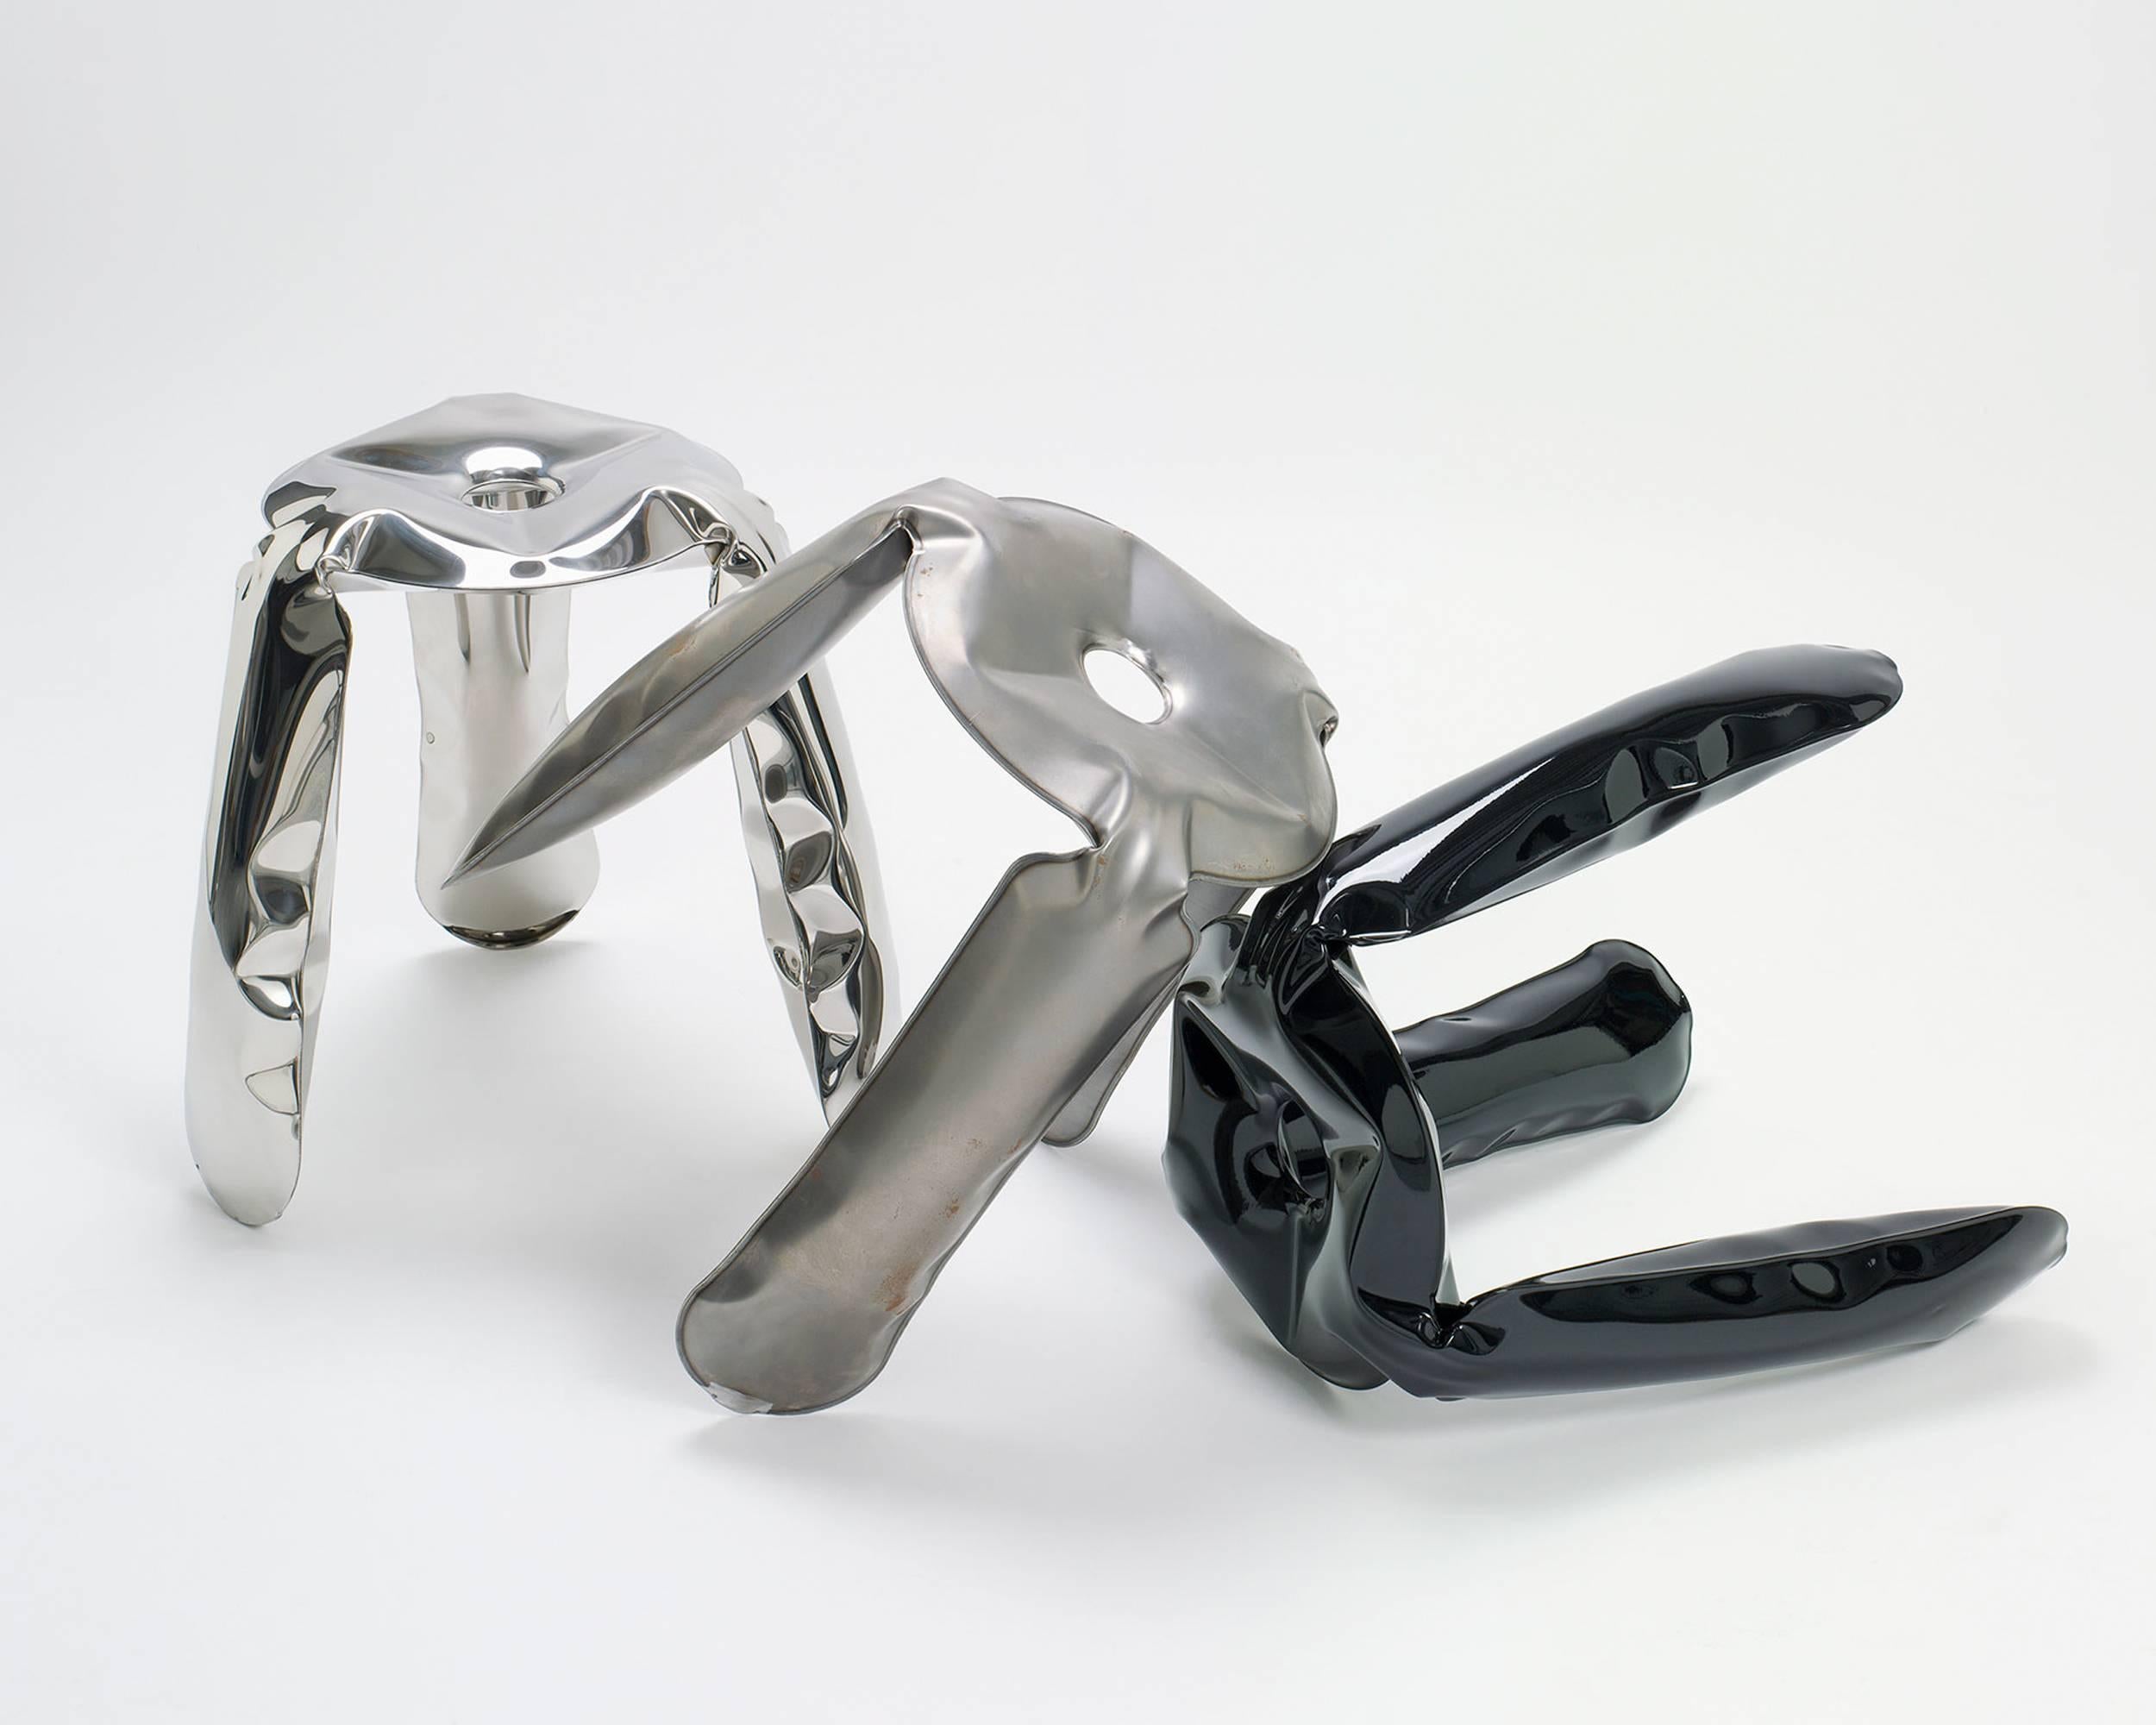 Industriel Tabouret Plopp 'Mini' by Zieta Prozessdesign, Version en acier inoxydable 'Inox'. en vente